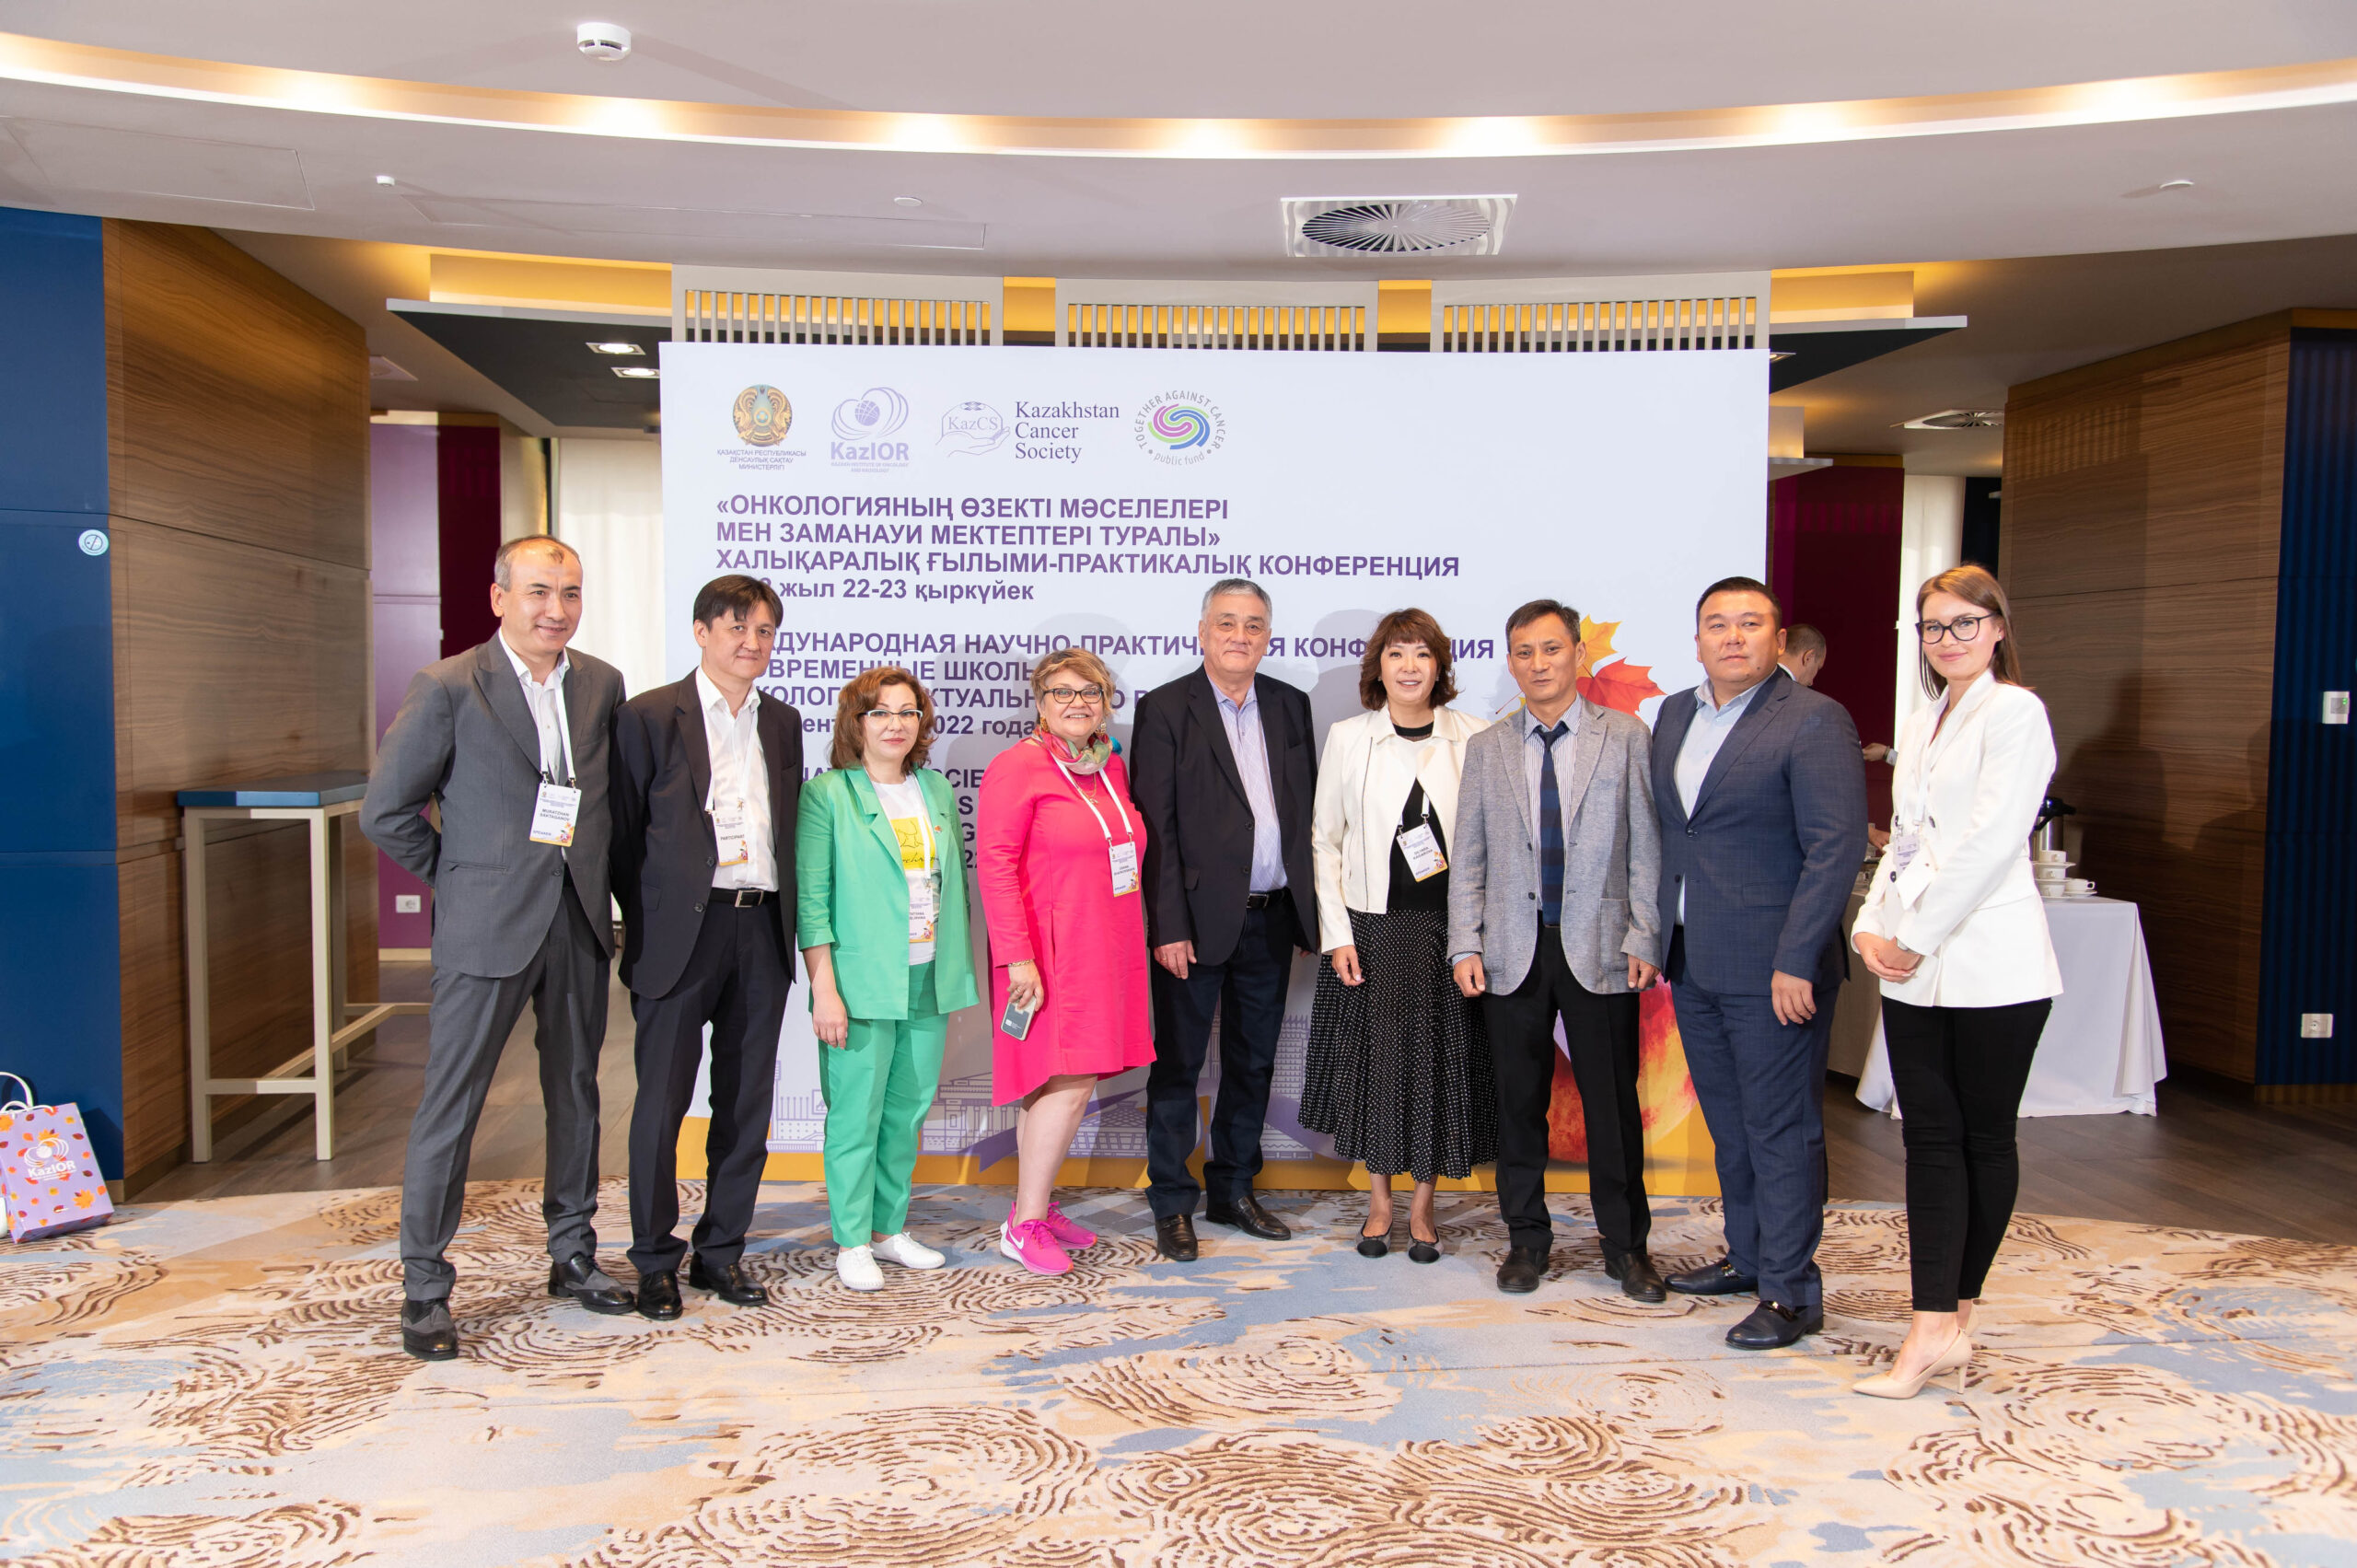 22-23 сентября 2022 г. в г. Алматы состоялась Международная научно-практическая конференция «Современные школы онкологии – актуально обо всем», в гибридном формате (офлайн +онлайн).